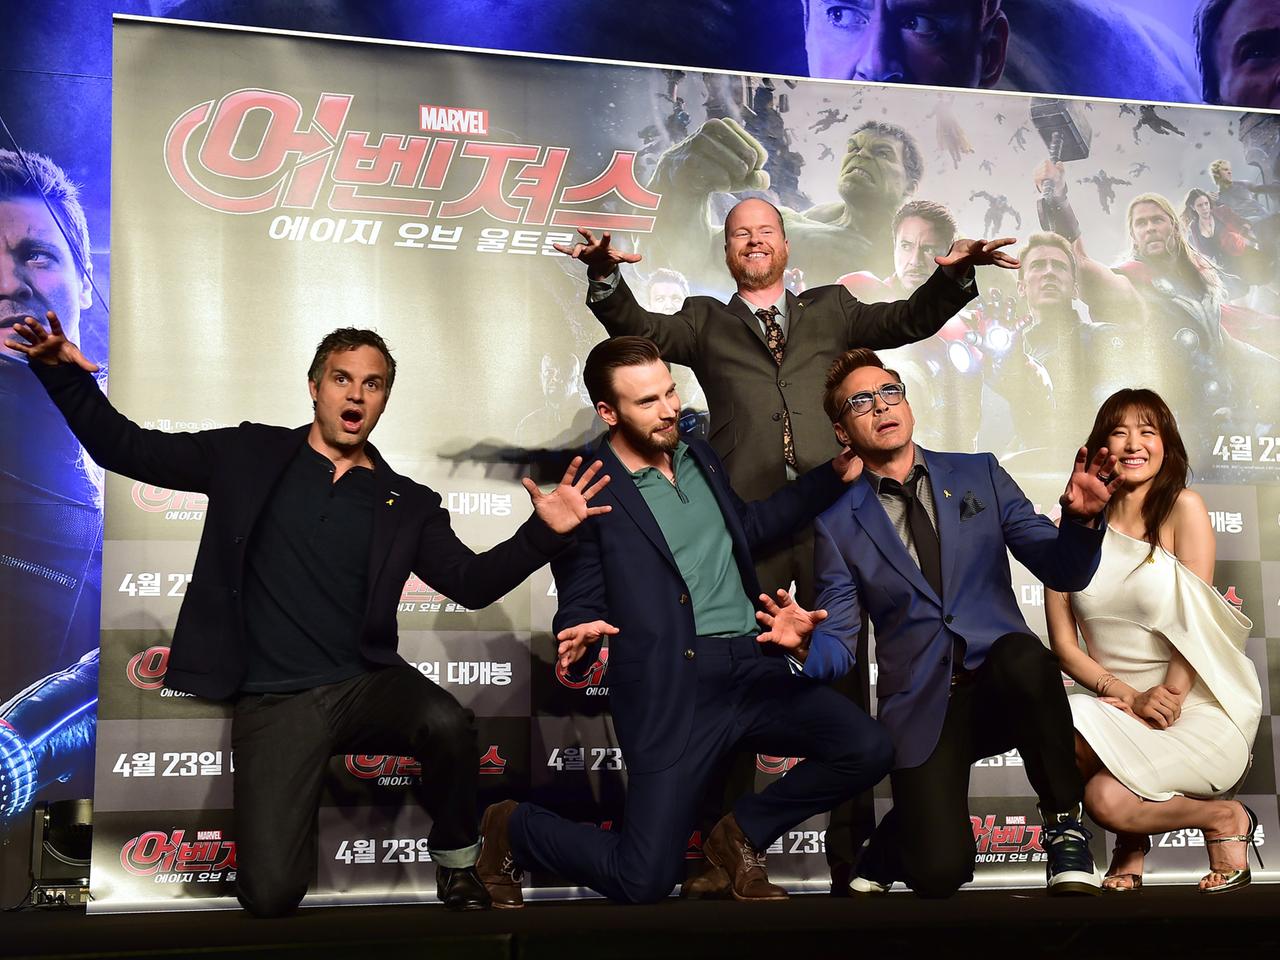 Die Schauspieler Mark Ruffalo, Chris Evans, Robert Downey Jr. und Kim Soo-Hyun sowie Regisseur Joss Whedon posieren vor einem Filmplakat von "Avengers: Age Of Ultron"